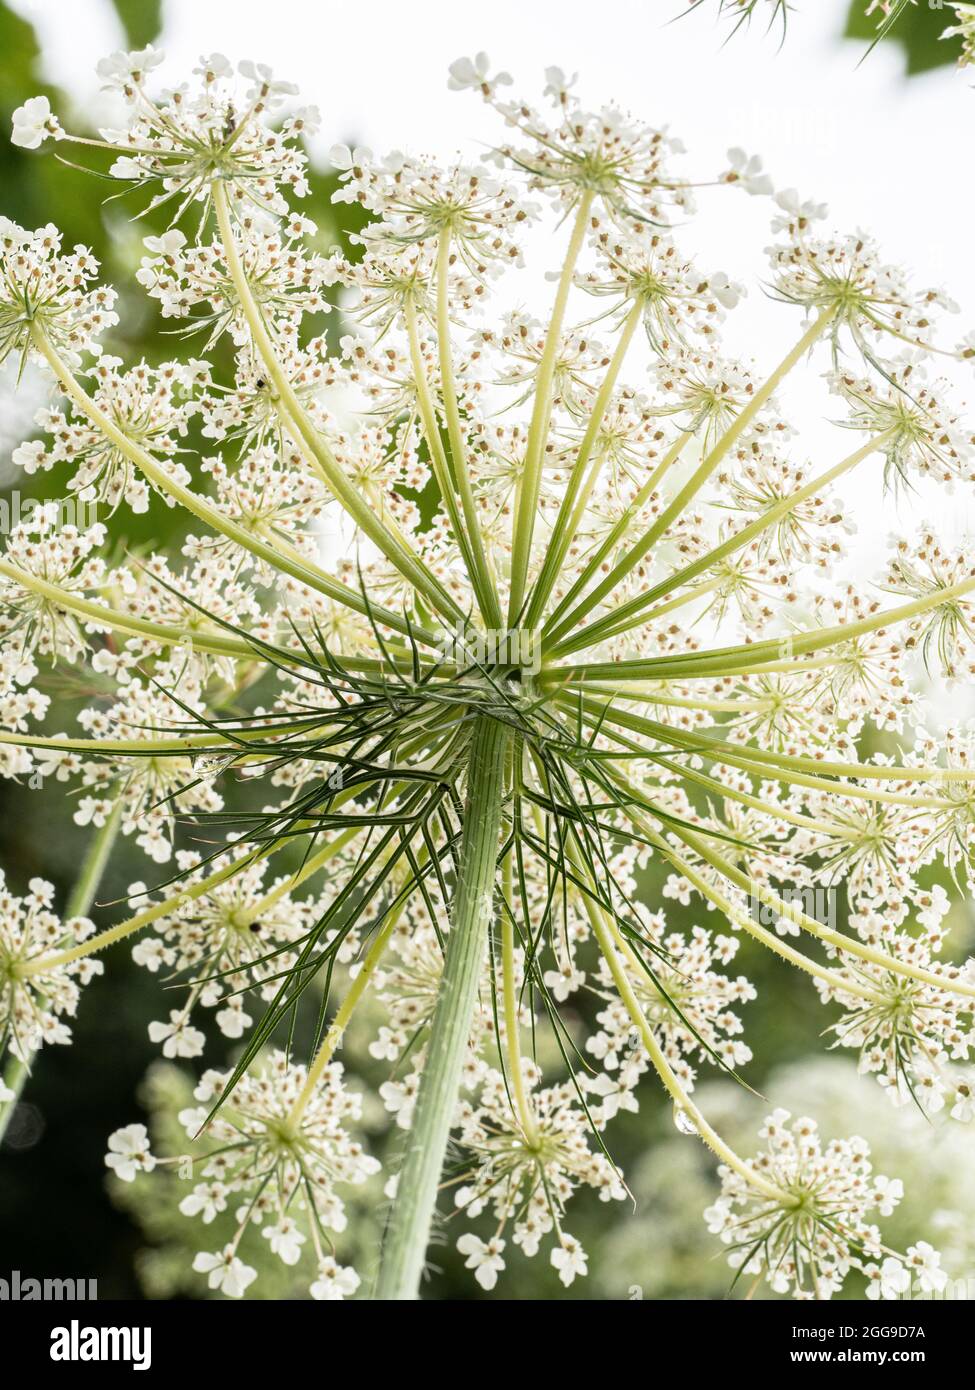 Un primer plano de la parte inferior de una flor de zanahoria salvaje contra la luz que muestra el delicado encaje como patrón de los floretes Foto de stock